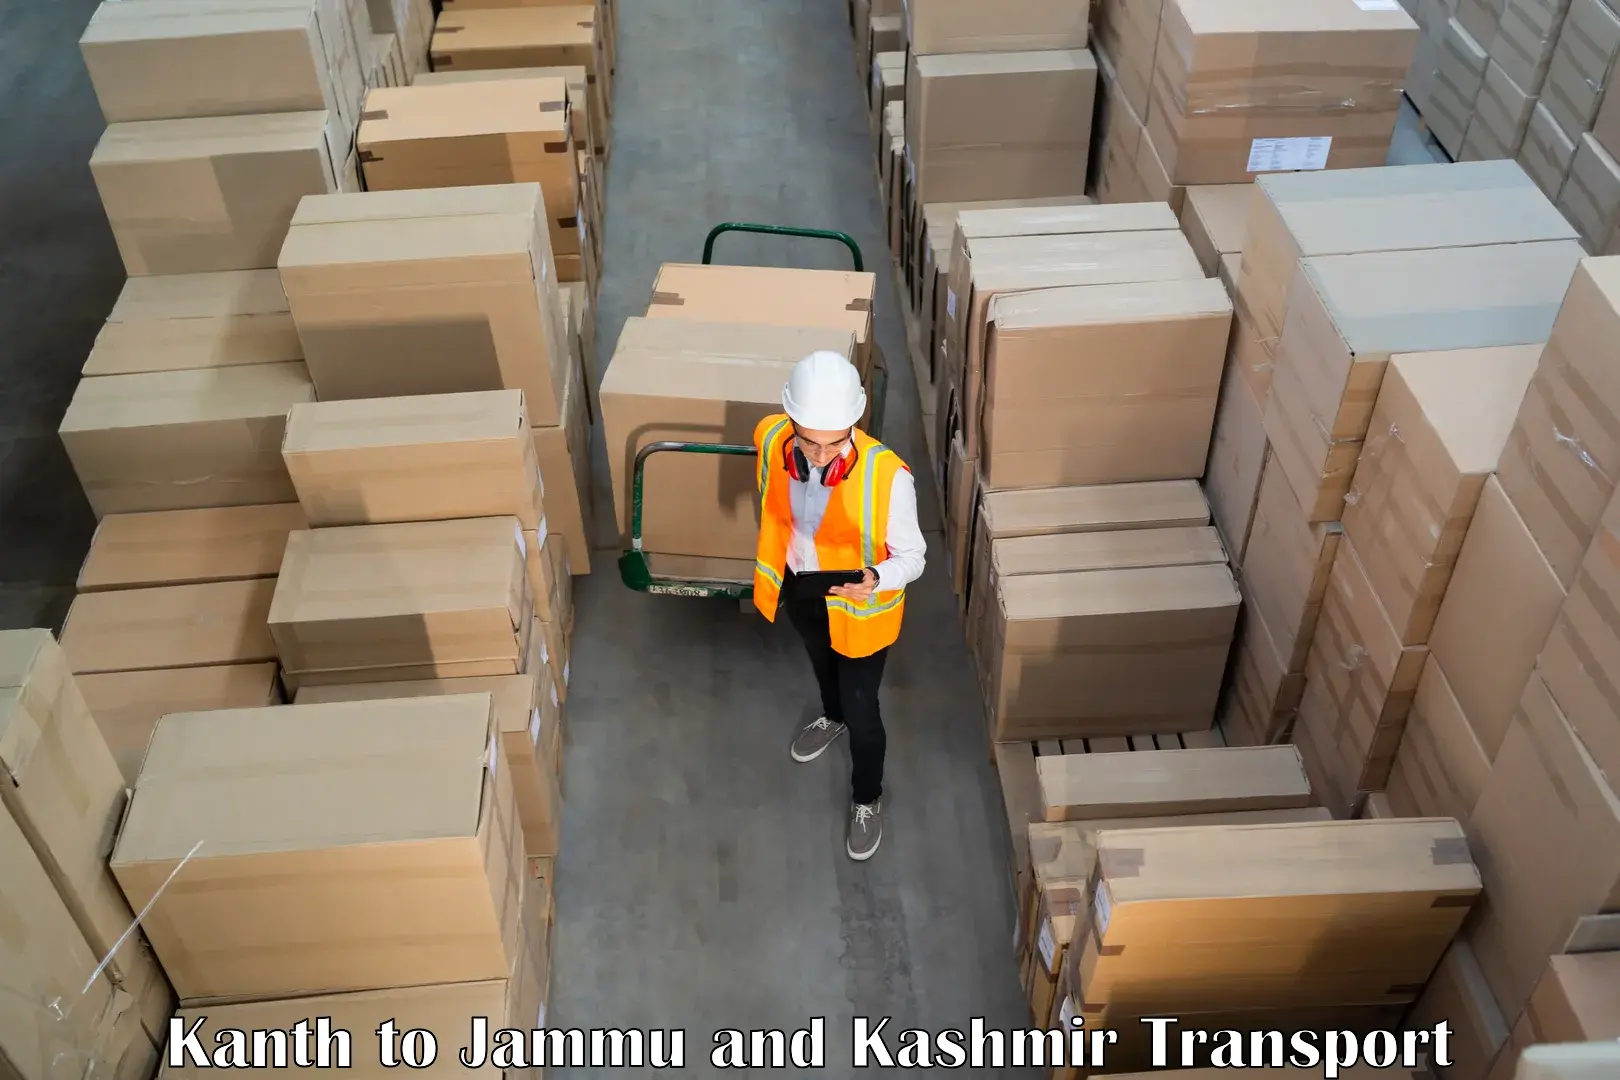 Parcel transport services Kanth to Srinagar Kashmir